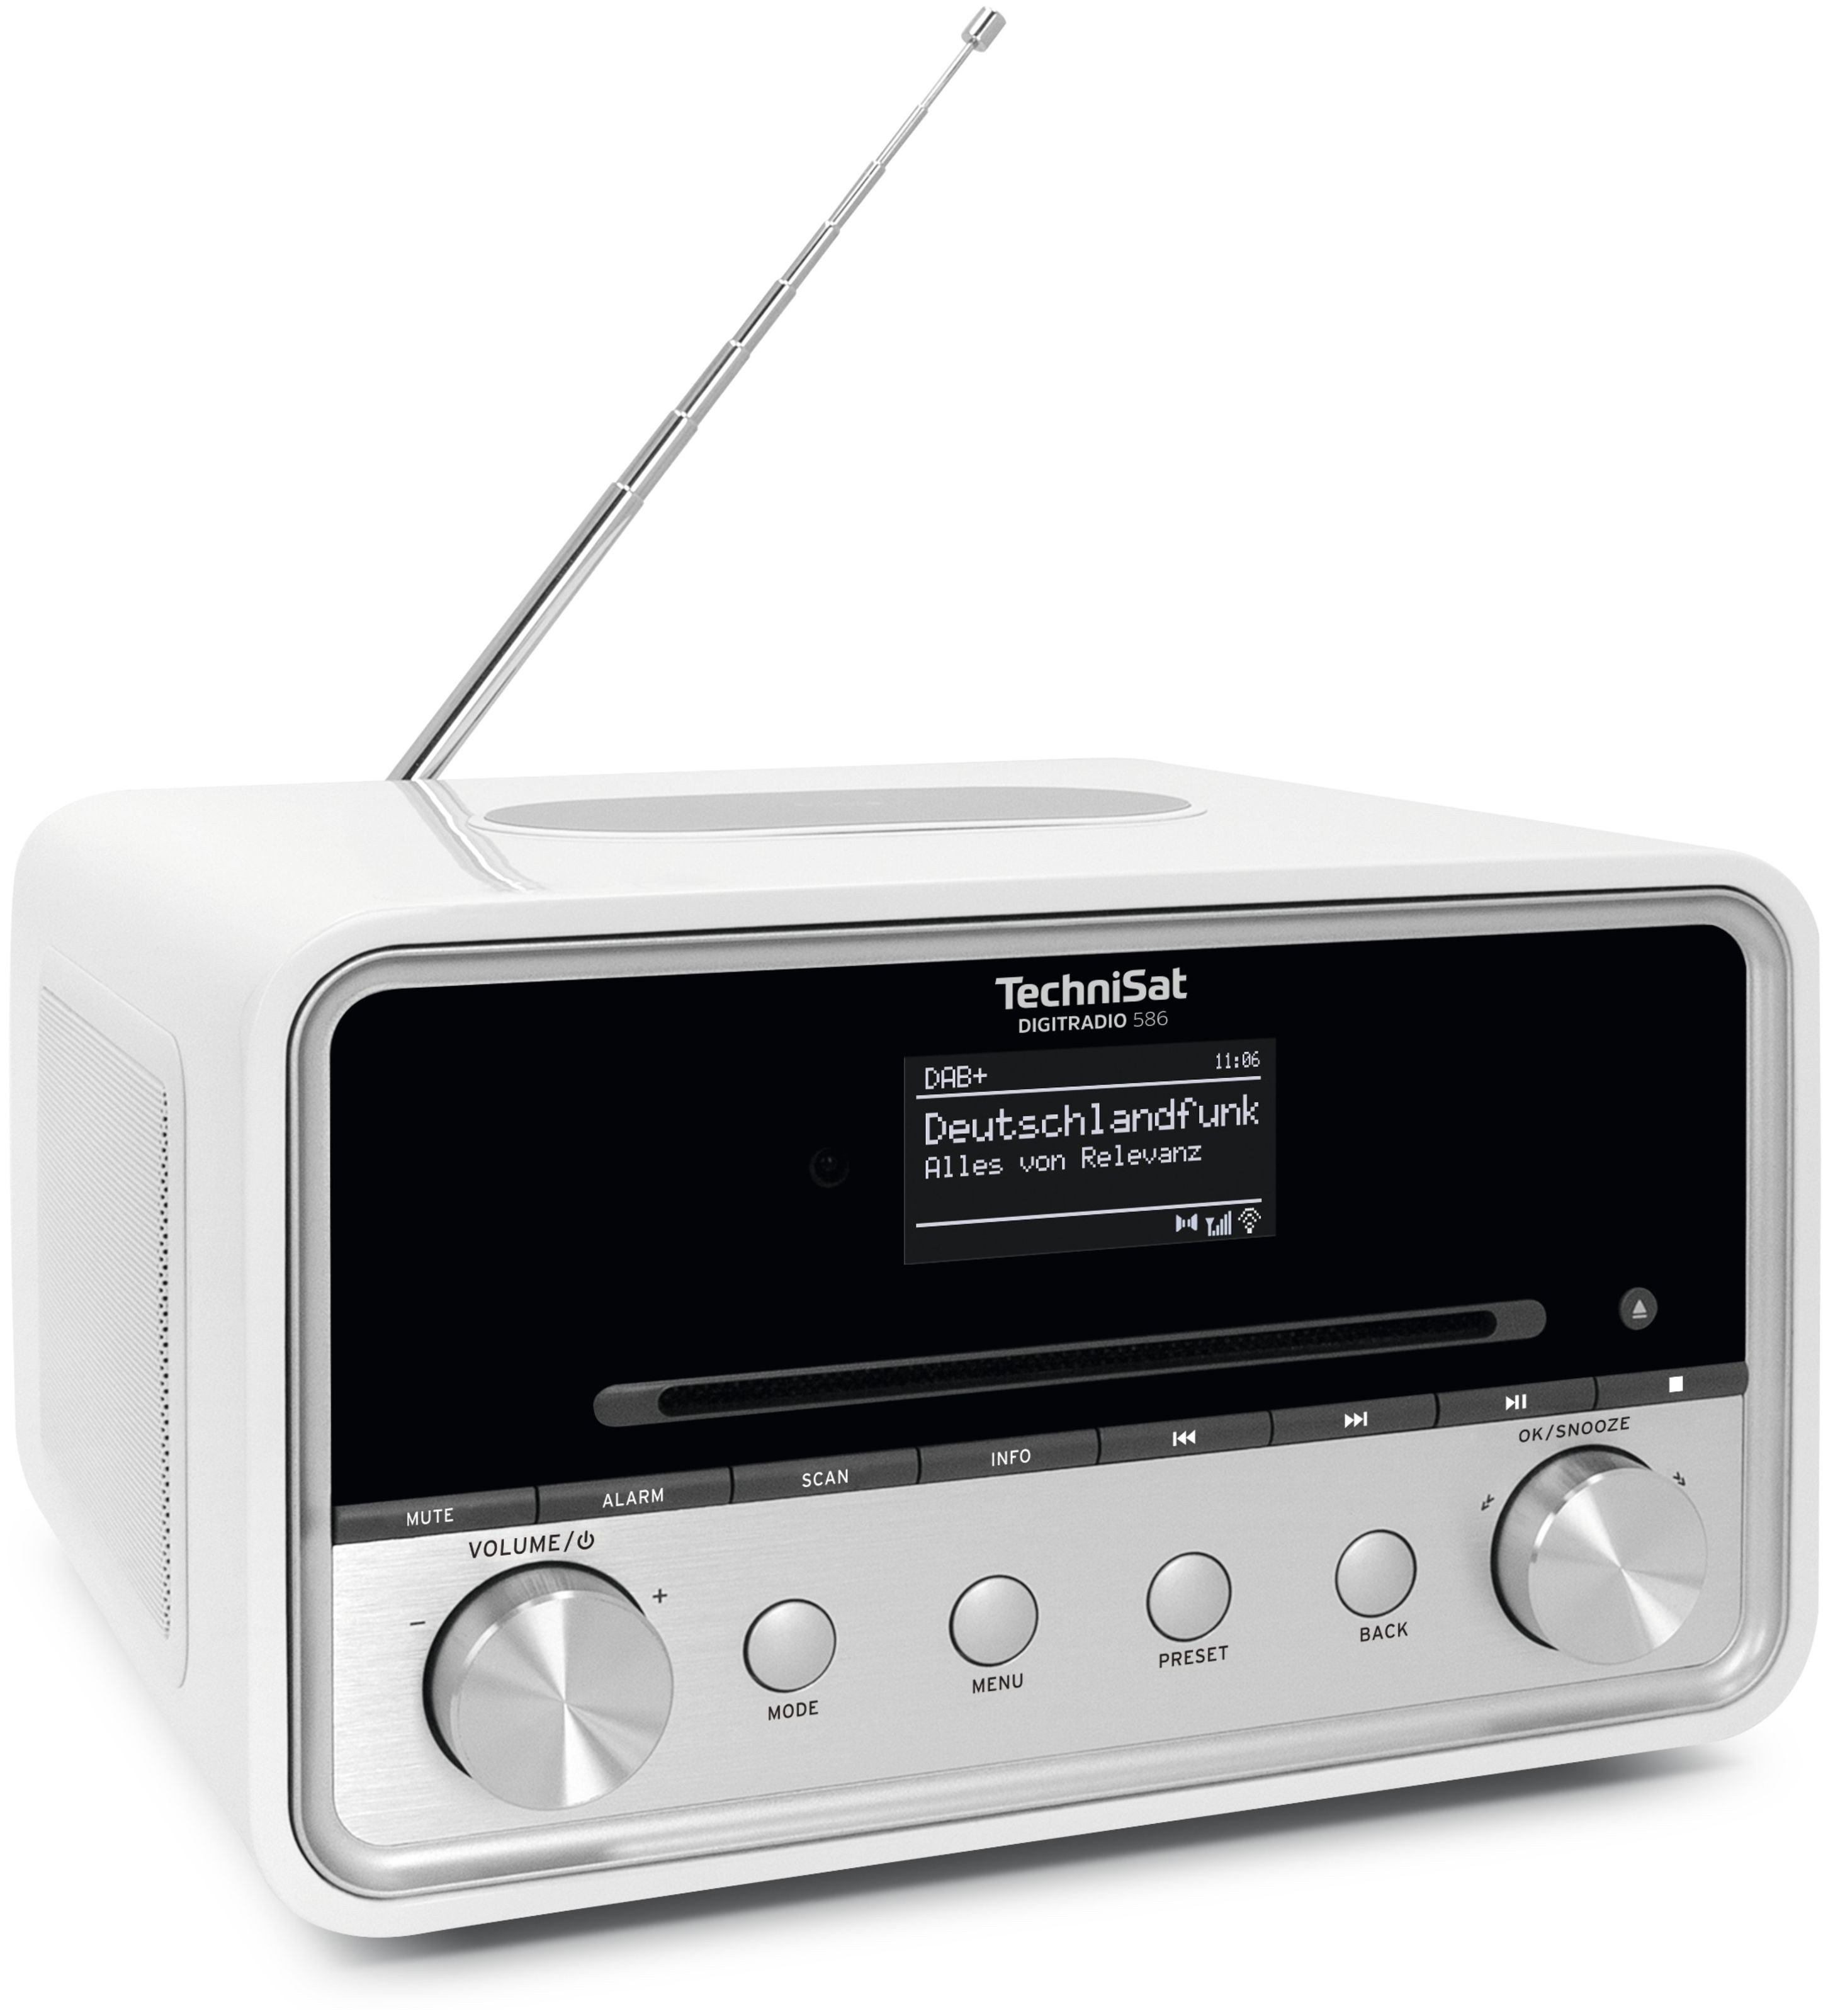 TechniSat Digitradio 586 bei Boomstore